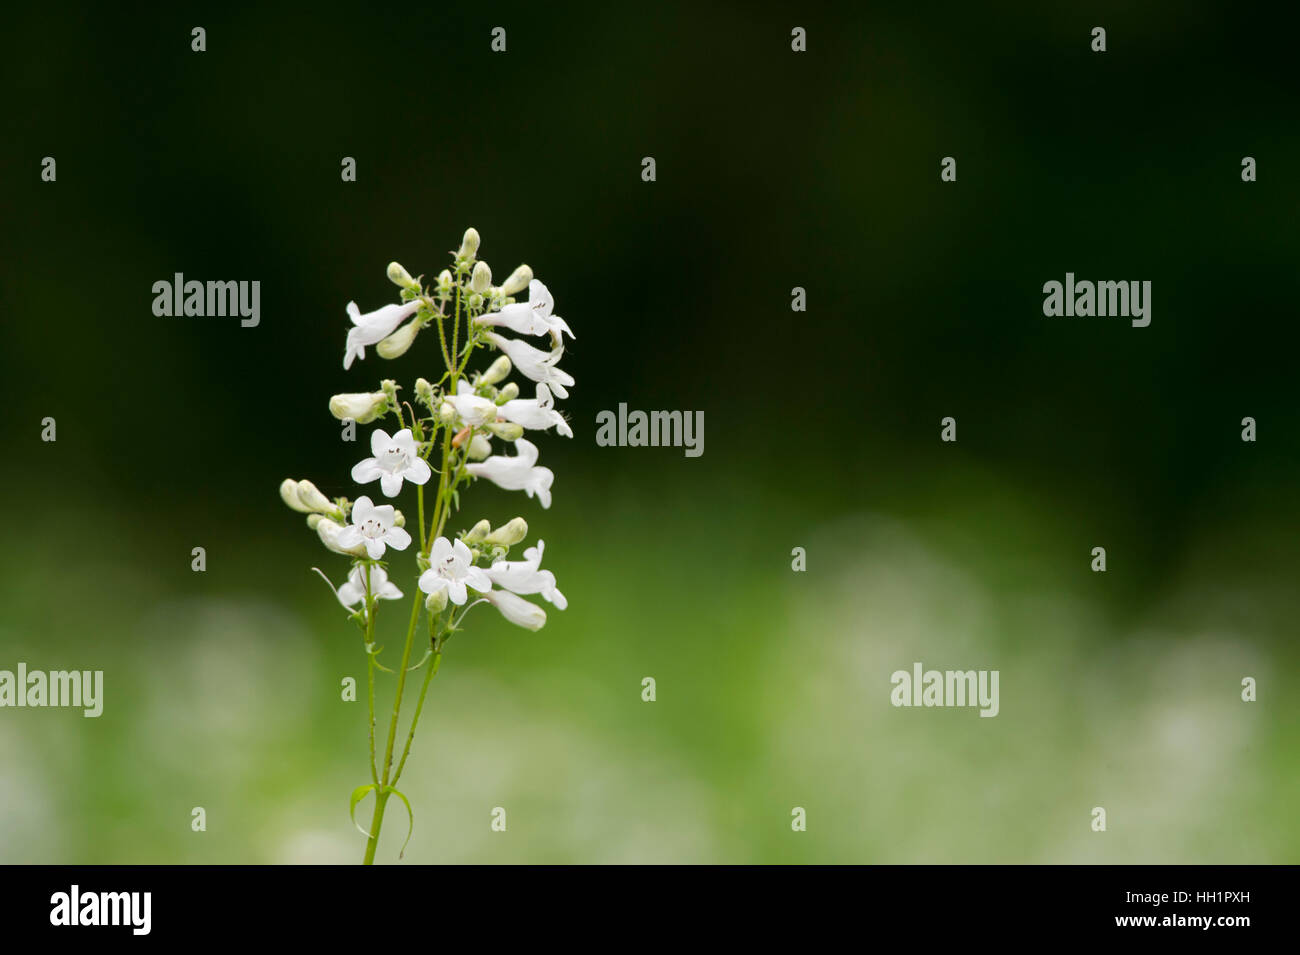 Un fiore bianco si staglia contro uno sfondo verde scuro. Foto Stock